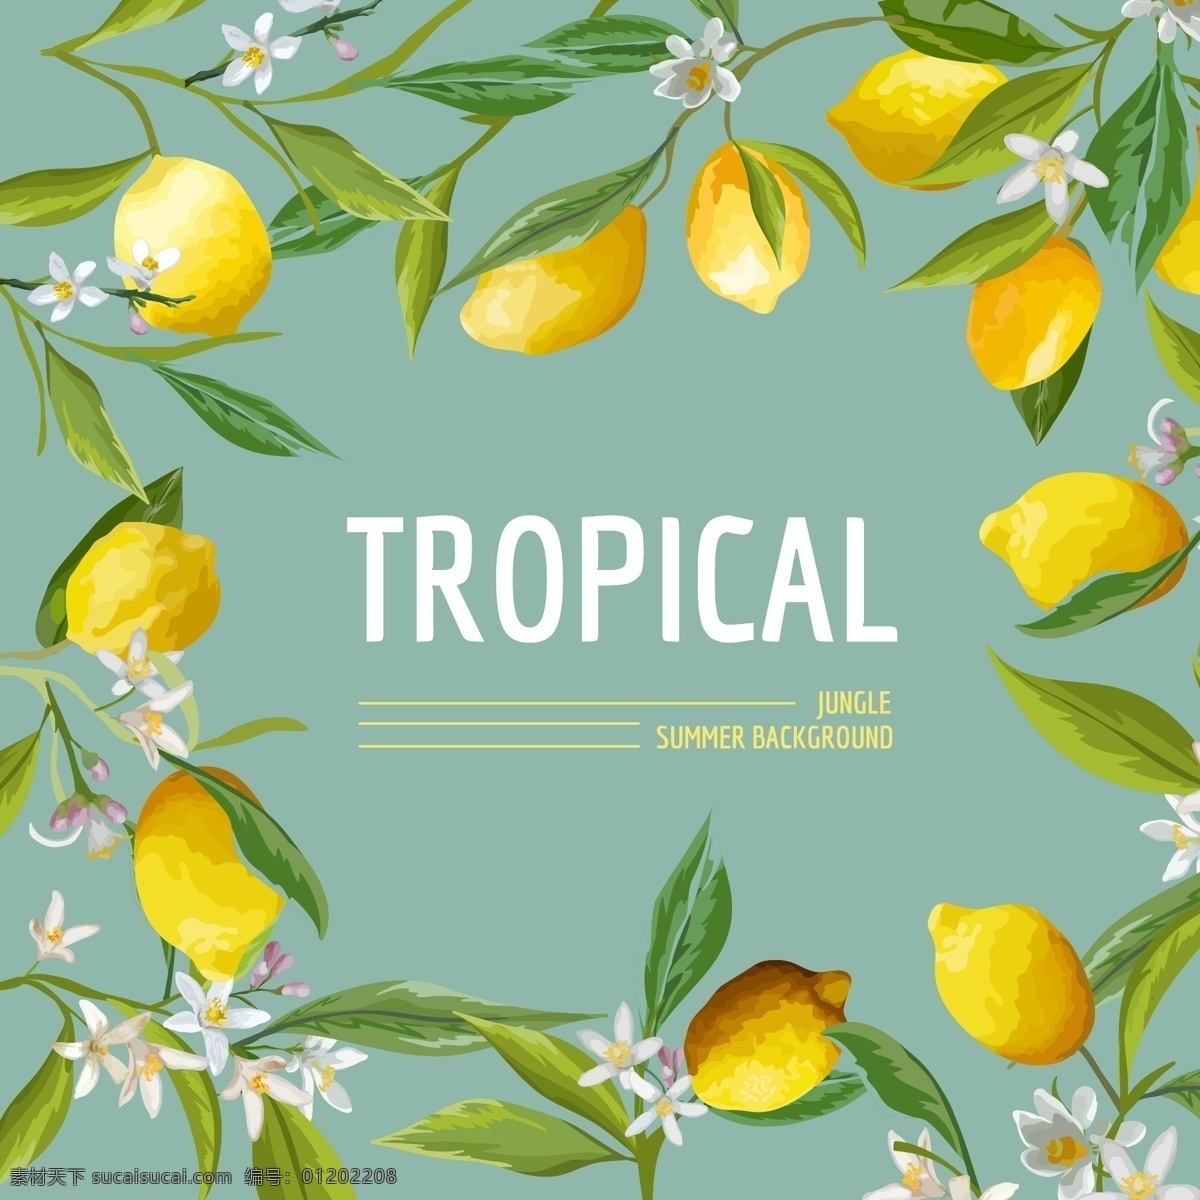 柠檬 热带 风情 卡片 矢量 背景 文字 排版 矢量素材 背景素材 设计素材